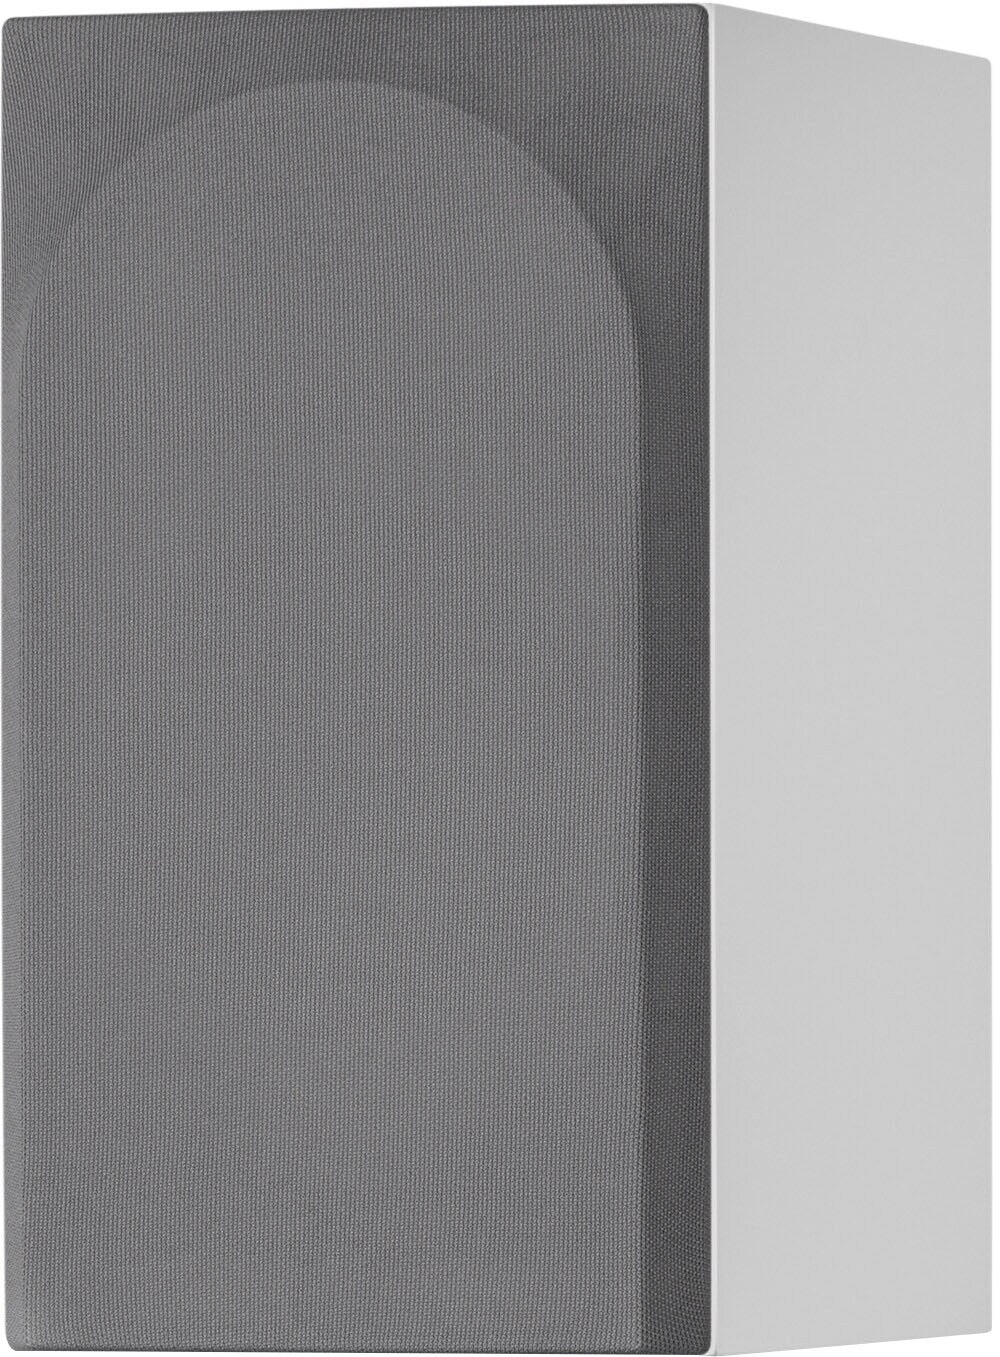 Bowers & Wilkins - 700 Series 3 Bookshelf Speaker w/5" midbass (pair) - White_1